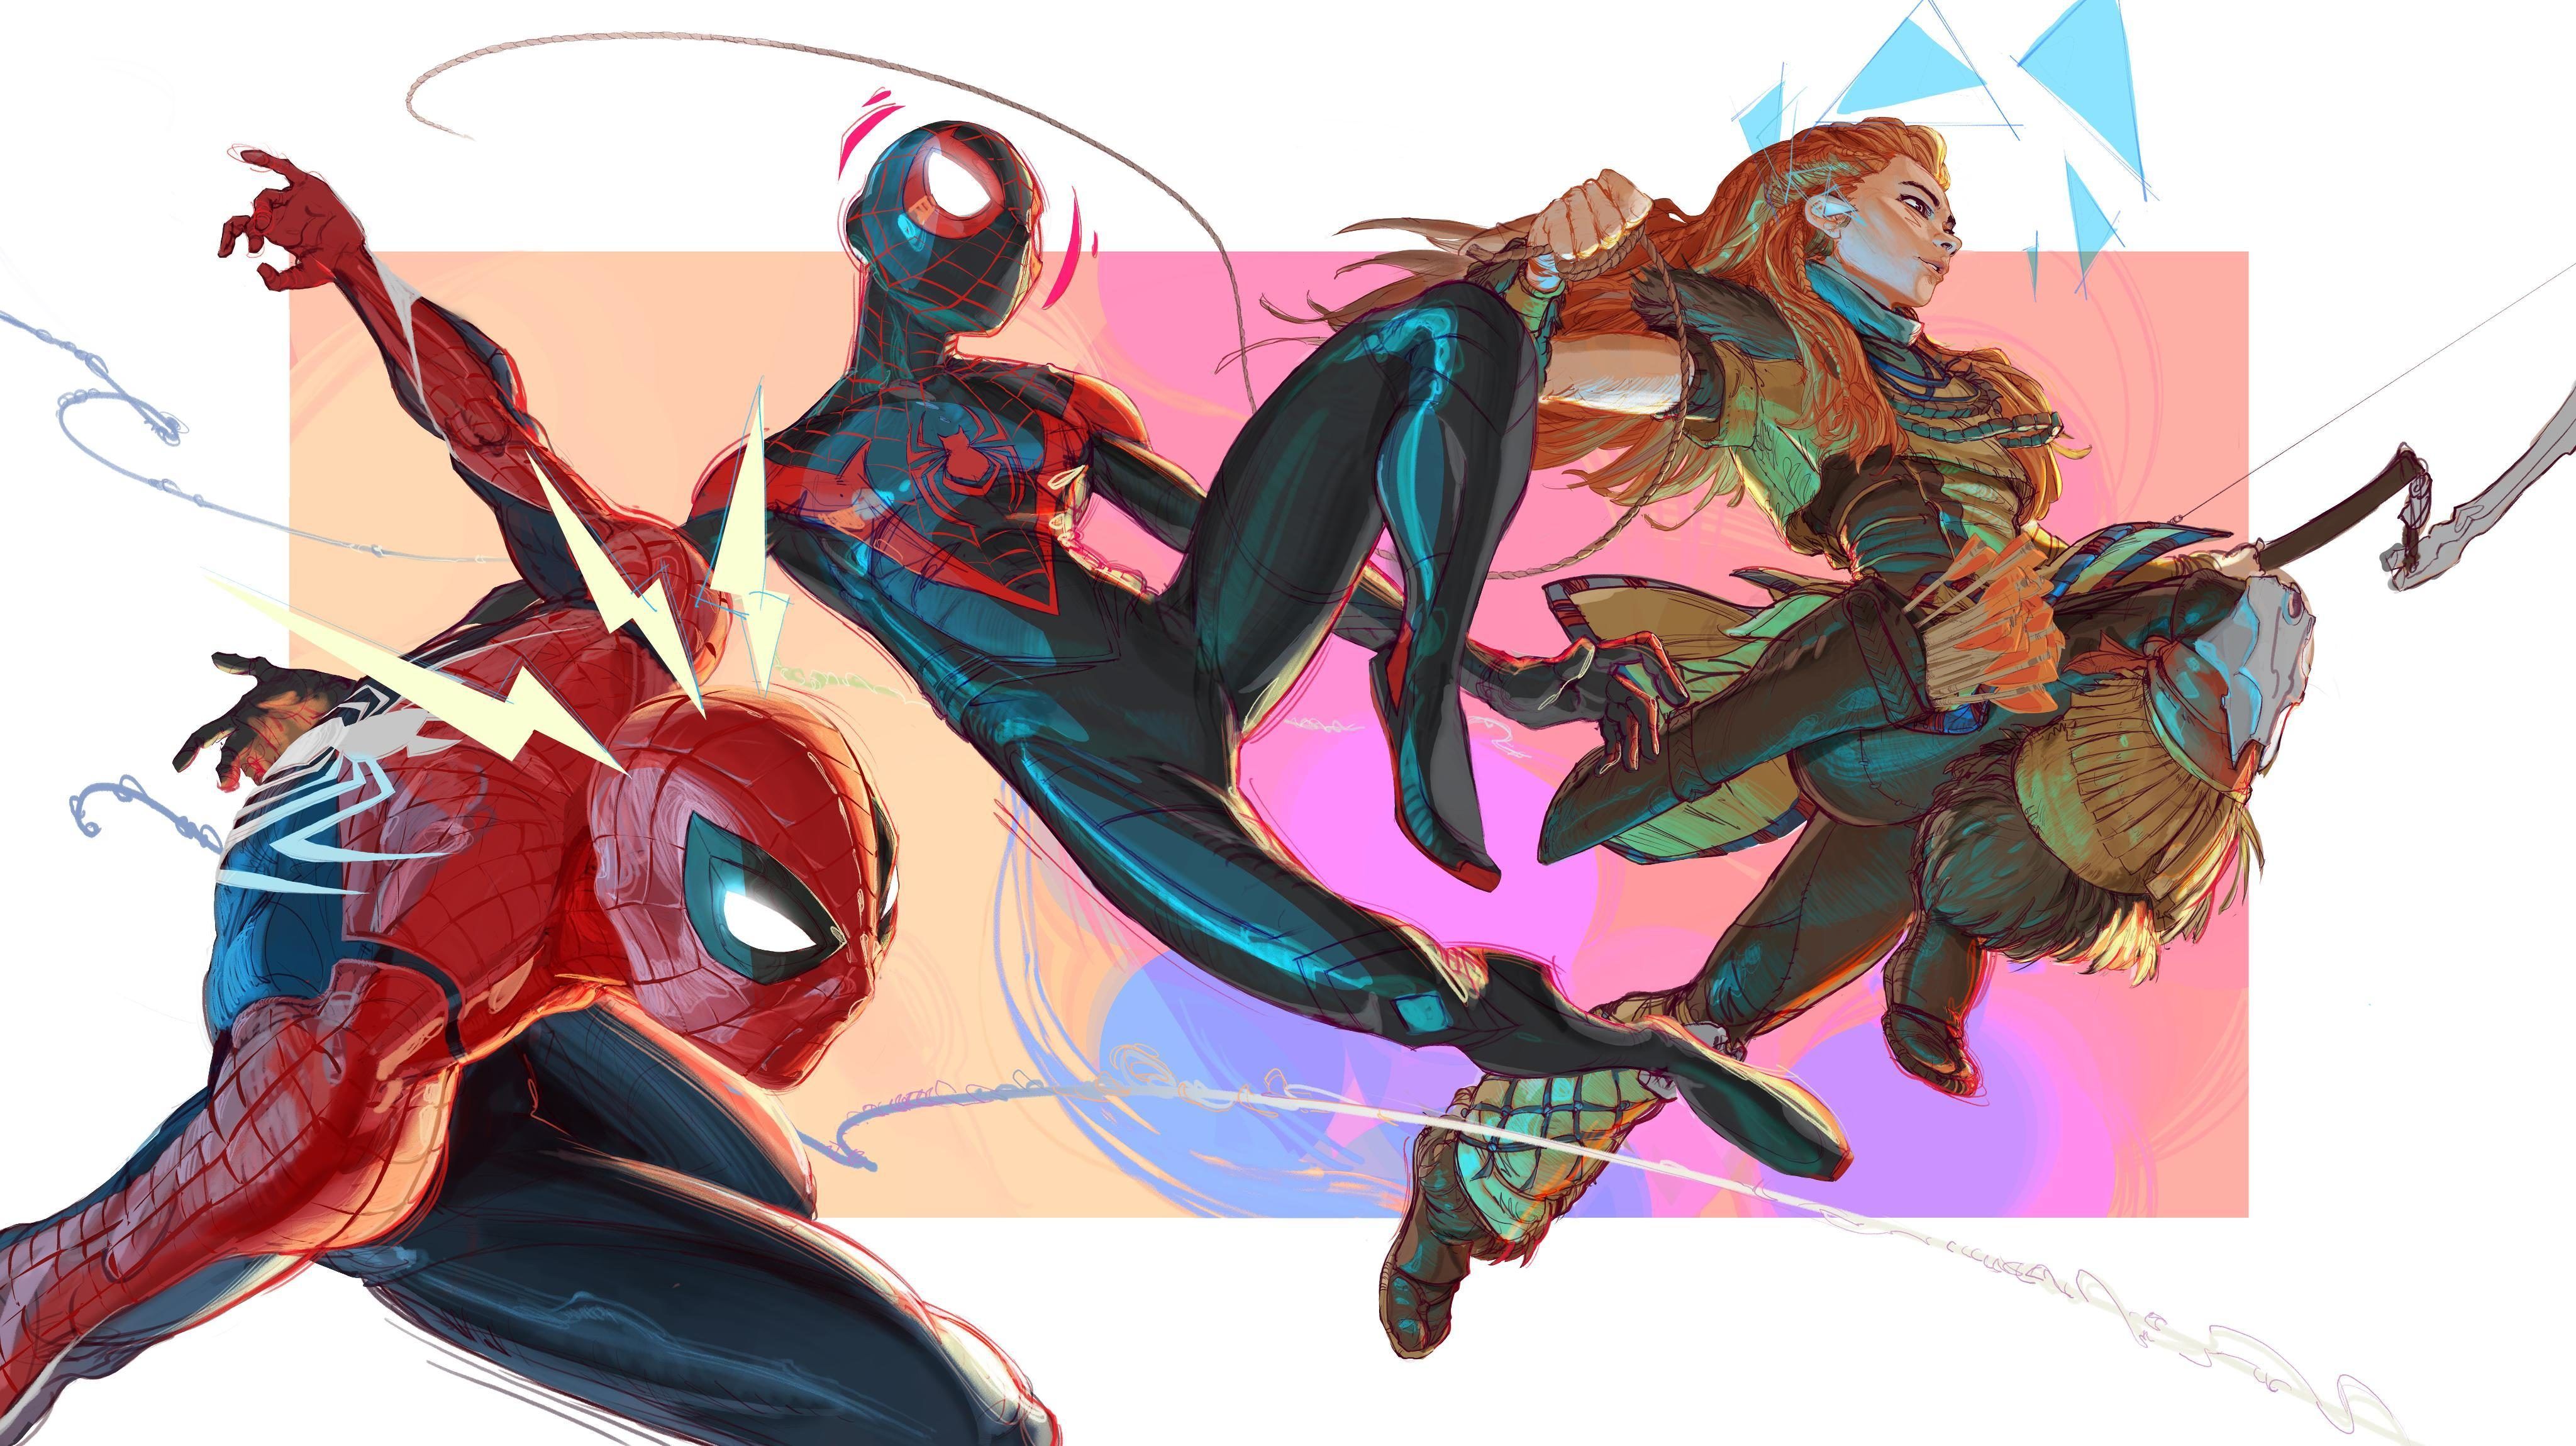 Элой и Кратос веселяться с Пауками: Студии Sony поделились артами в честь релиза Marvel's Spider-Man 2 |4